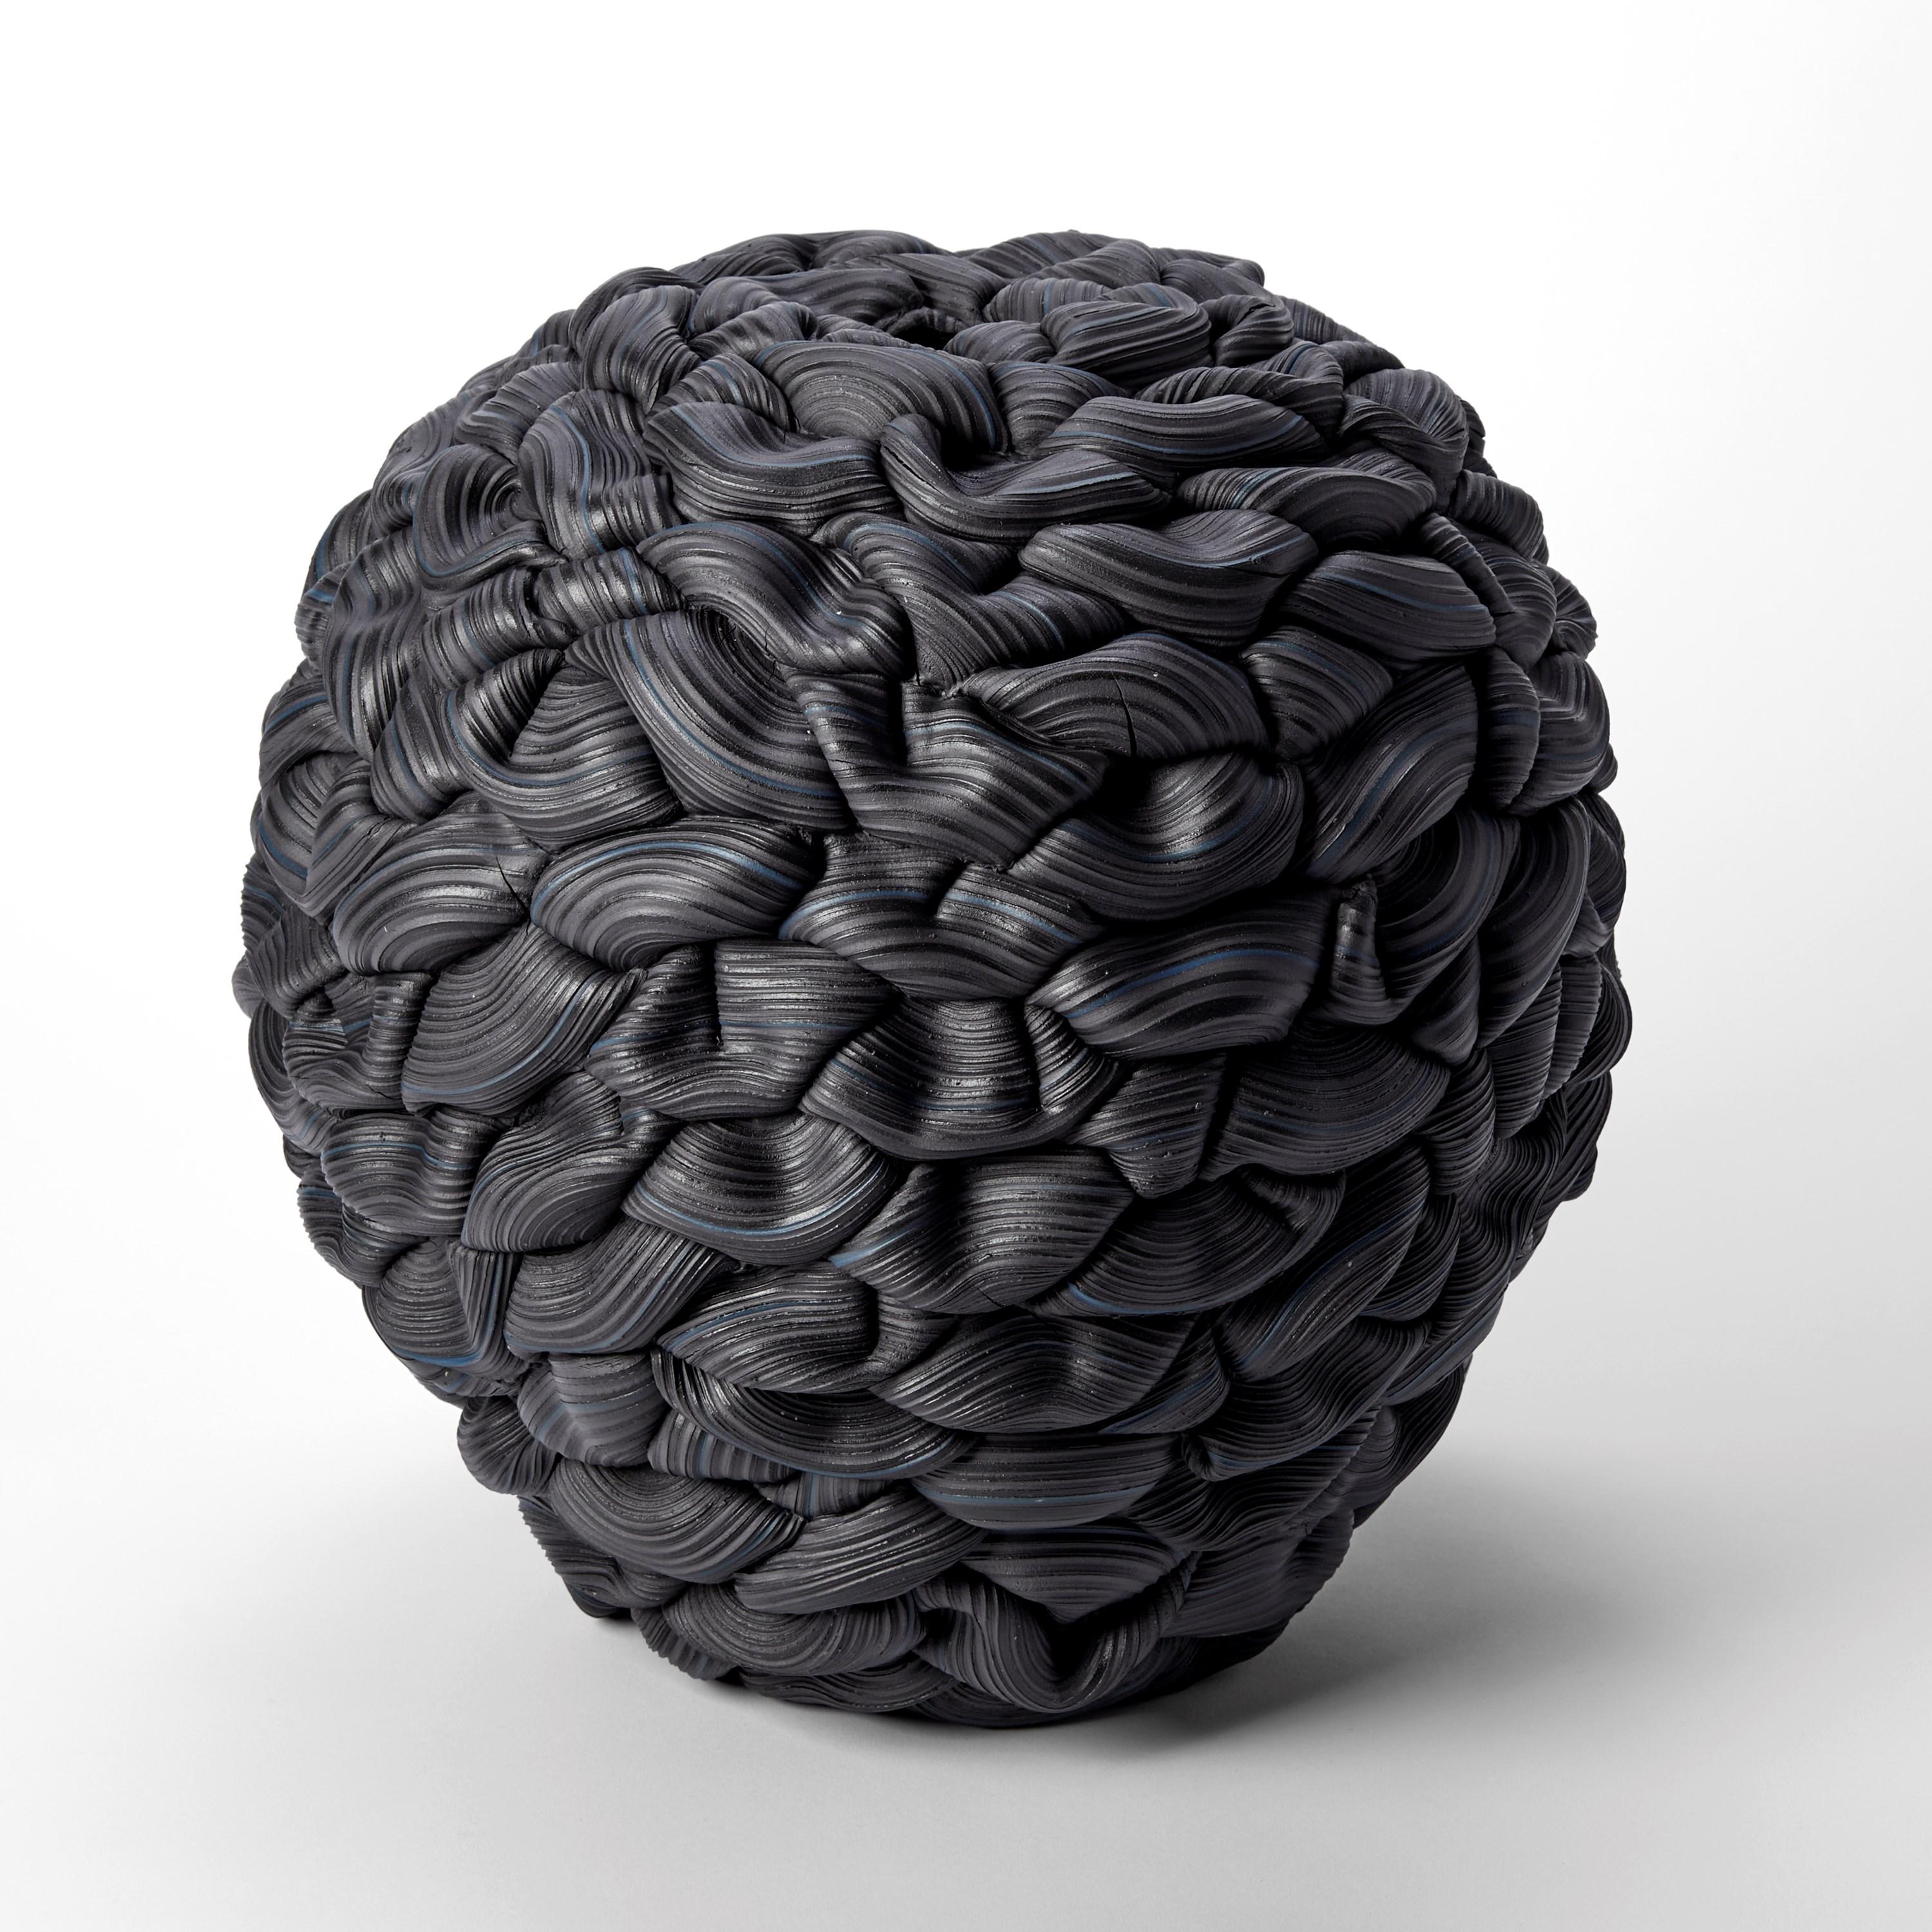 Hand-Crafted Banded Black Convex Fold V, black parian porcelain sculpture by Steven Edwards For Sale